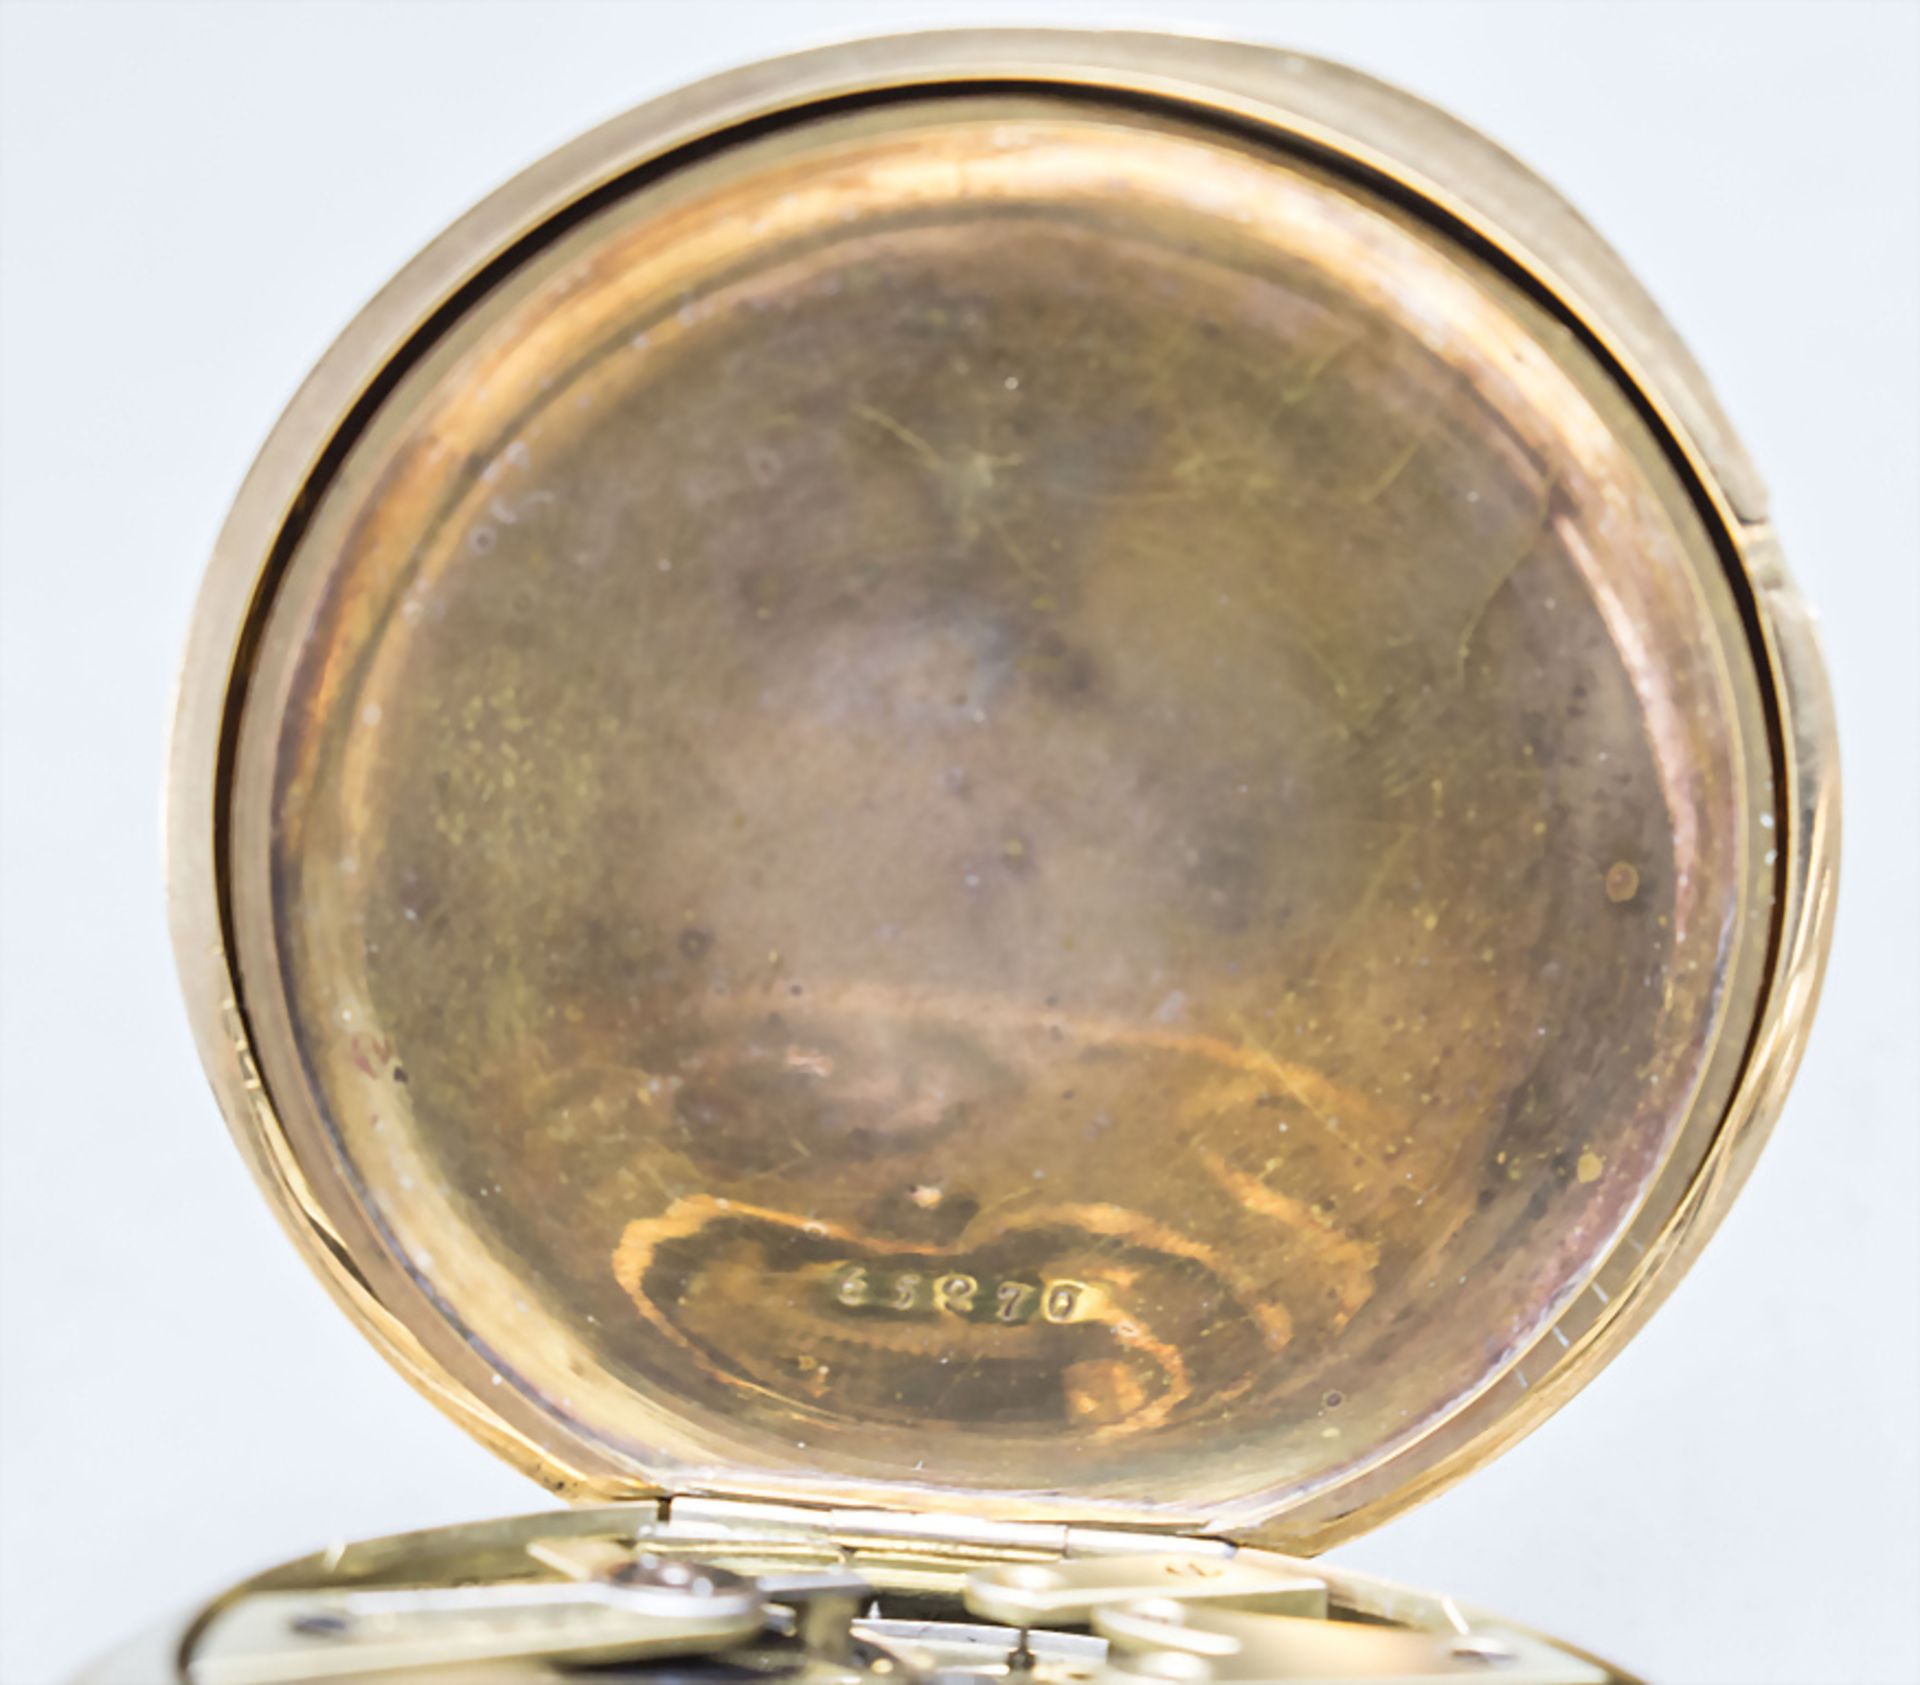 Savonette Taschenuhr Chronometer / A 14 ct gold open face pocket watch, Gebr. Eppner, Berlin, ... - Image 6 of 9